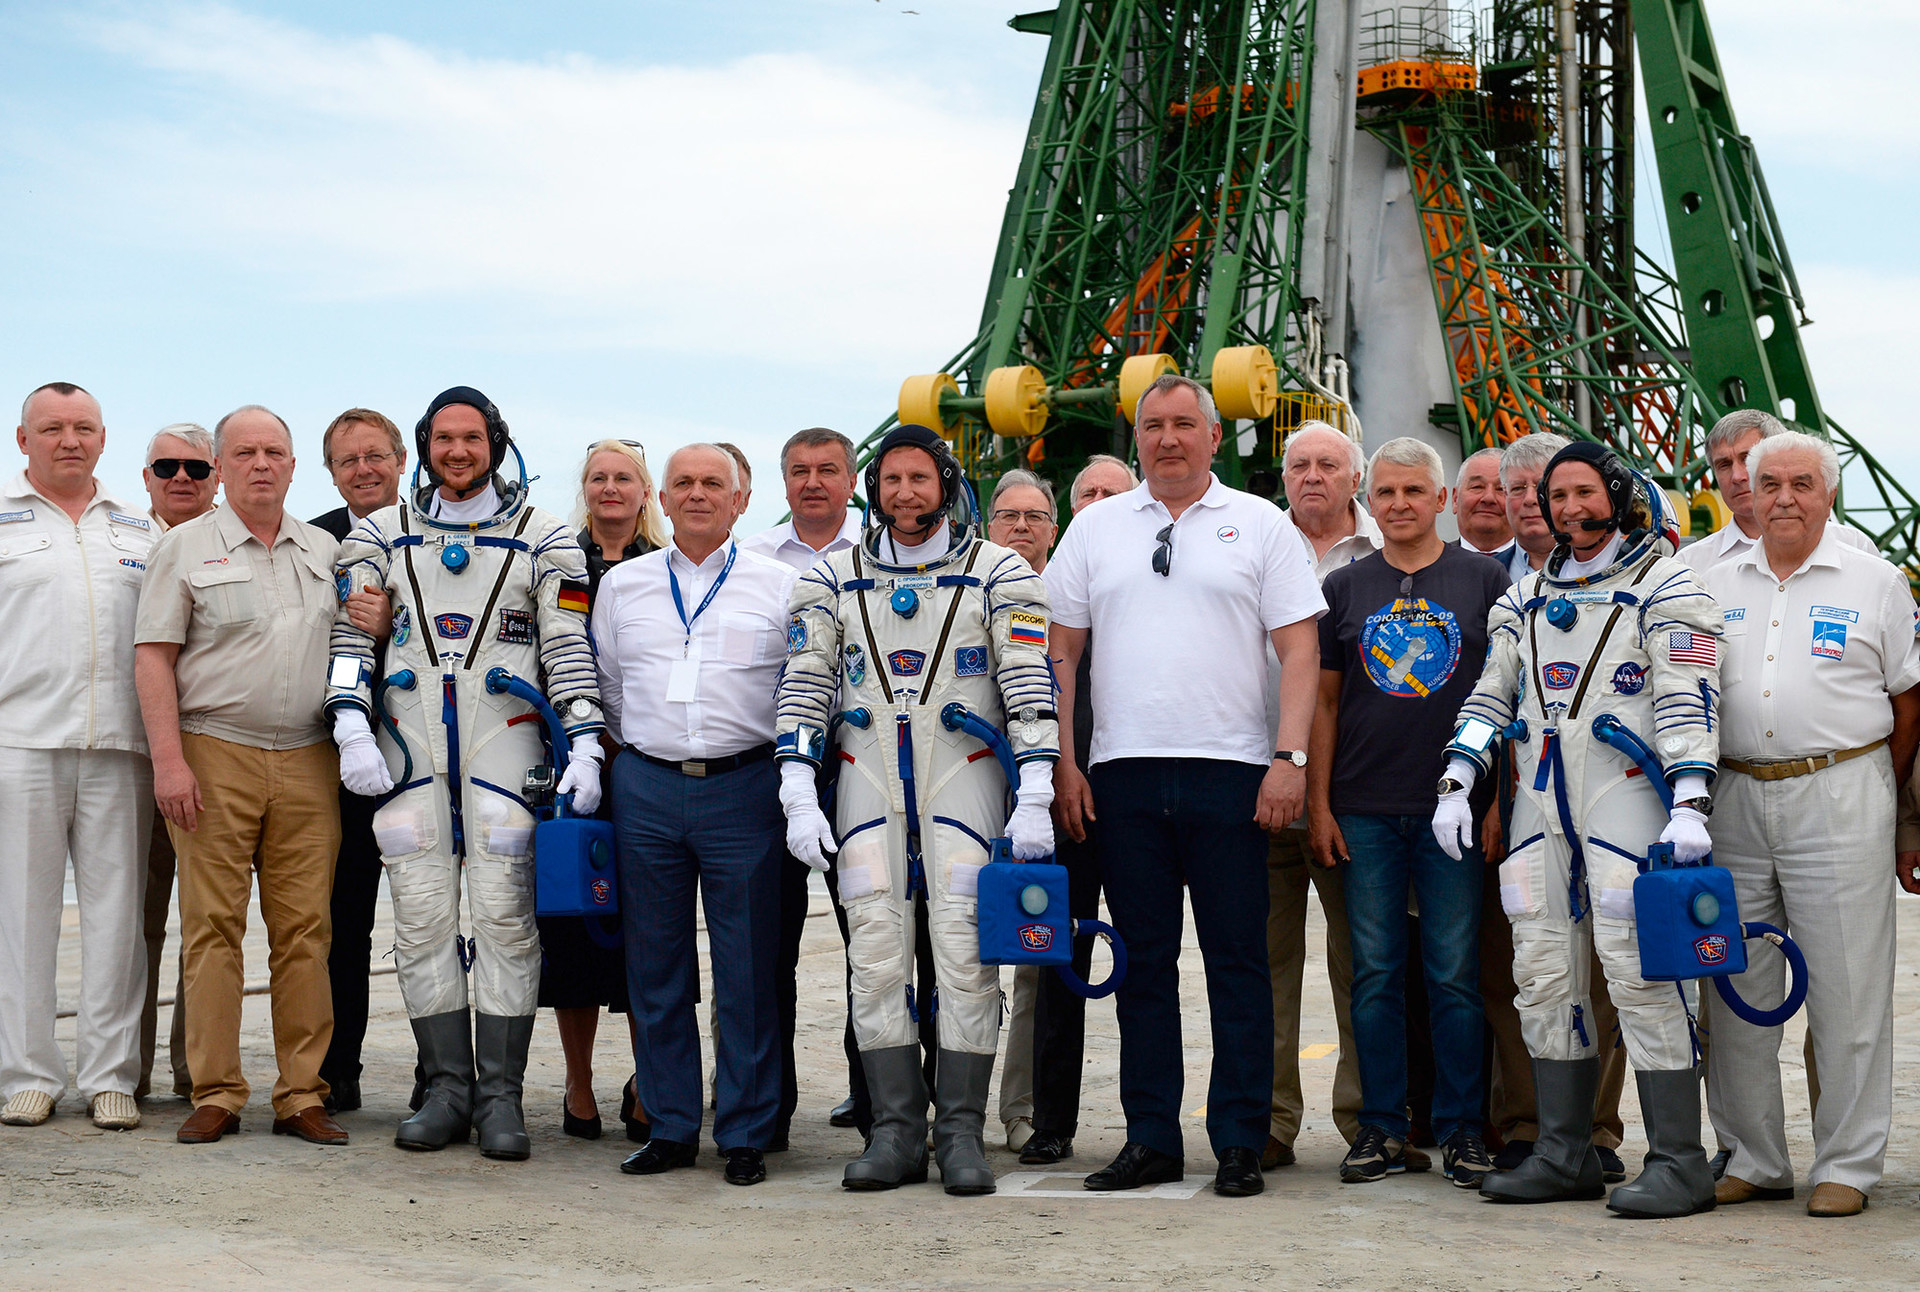  ロシア国営宇宙開発企業「ロスコスモス」のドミトリー・ロゴジン社長とISS第56、57次長期滞在のクルー。NASAのセリーナ・オナン・チャンセラー（米国）、ロスコスモスのセルゲイ・プロコピエフ（ロシア）、ESAのアレクサンドル・ゲルスト（ドイツ）。ソユーズMS-09を載せたソユーズ-FGローンチ・ヴィークルがバイコヌール宇宙基地のガガーリンスキー第一発射台から発射される前。